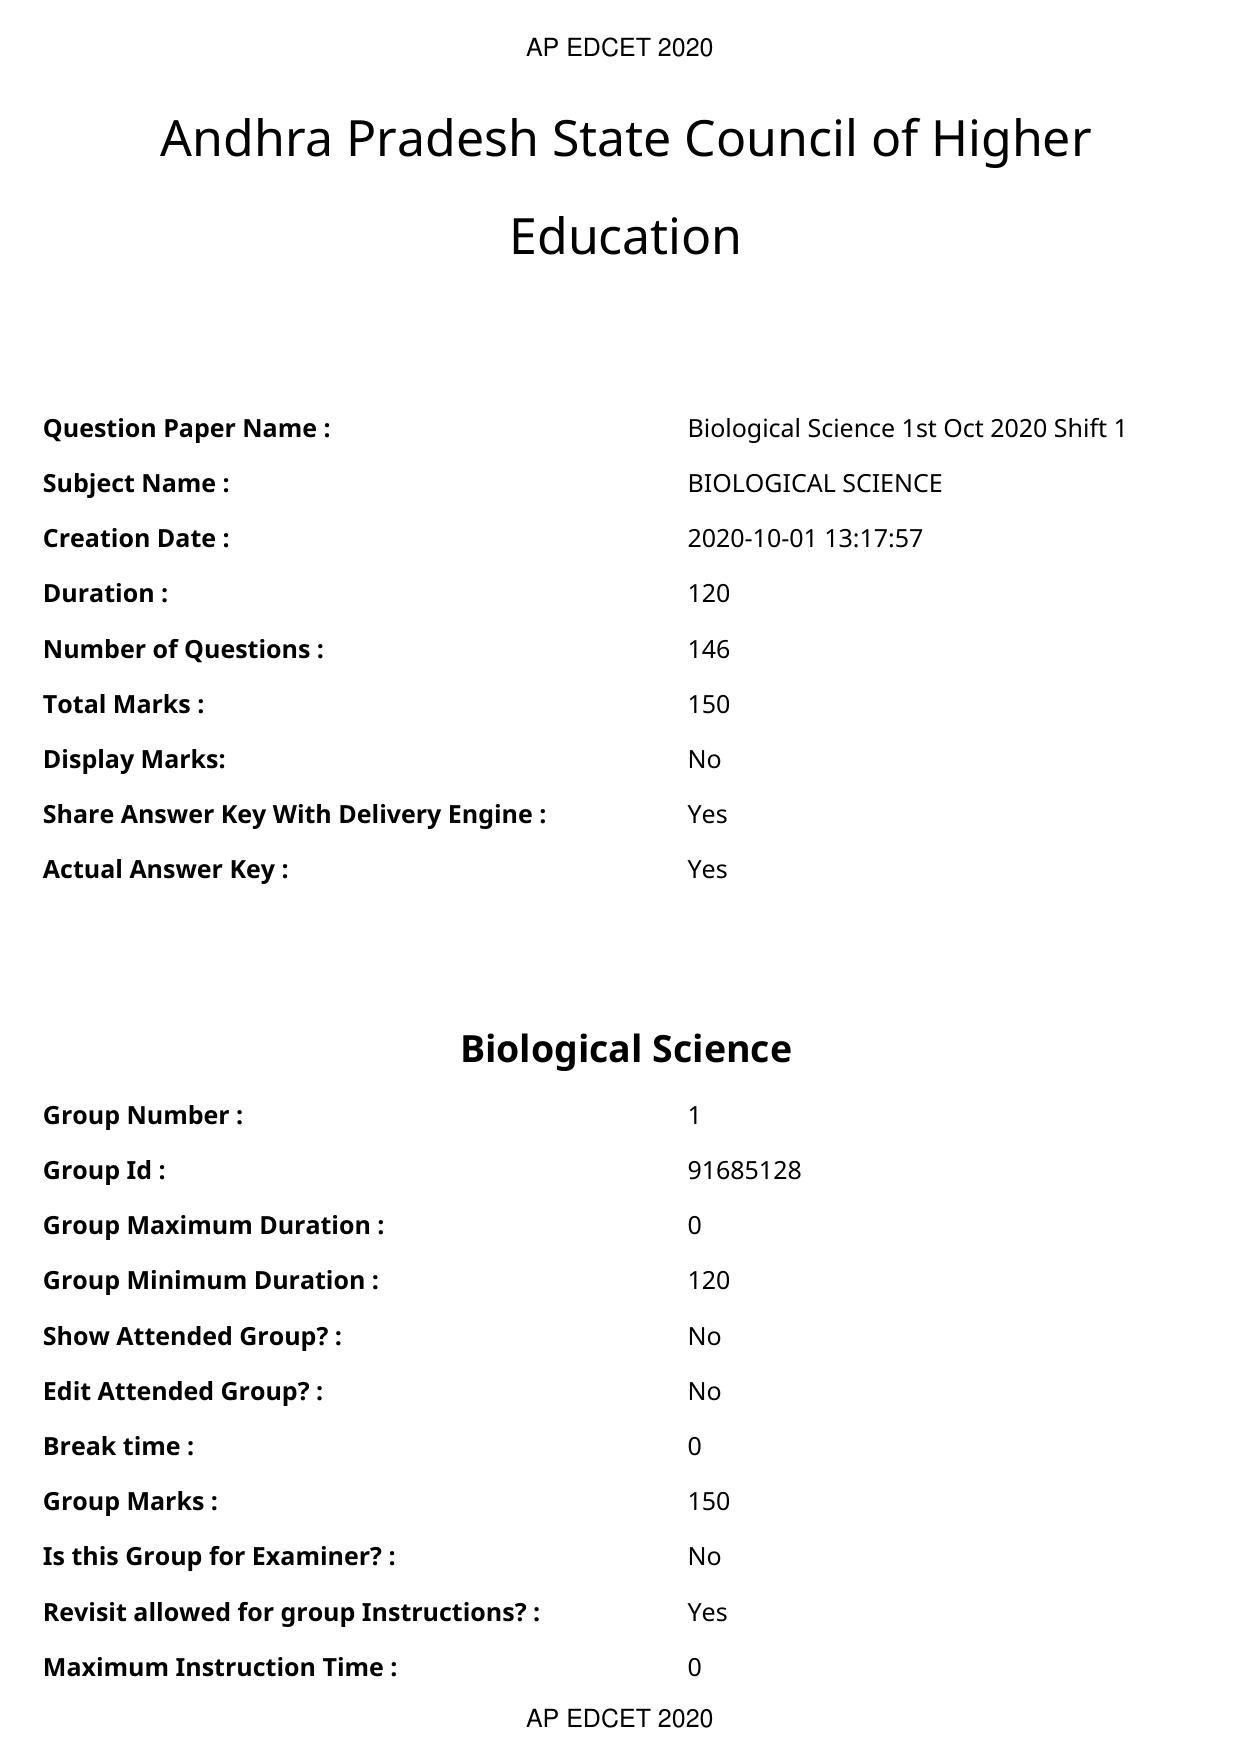 AP EDCET 2020 Biological Science Question Paper - Page 1